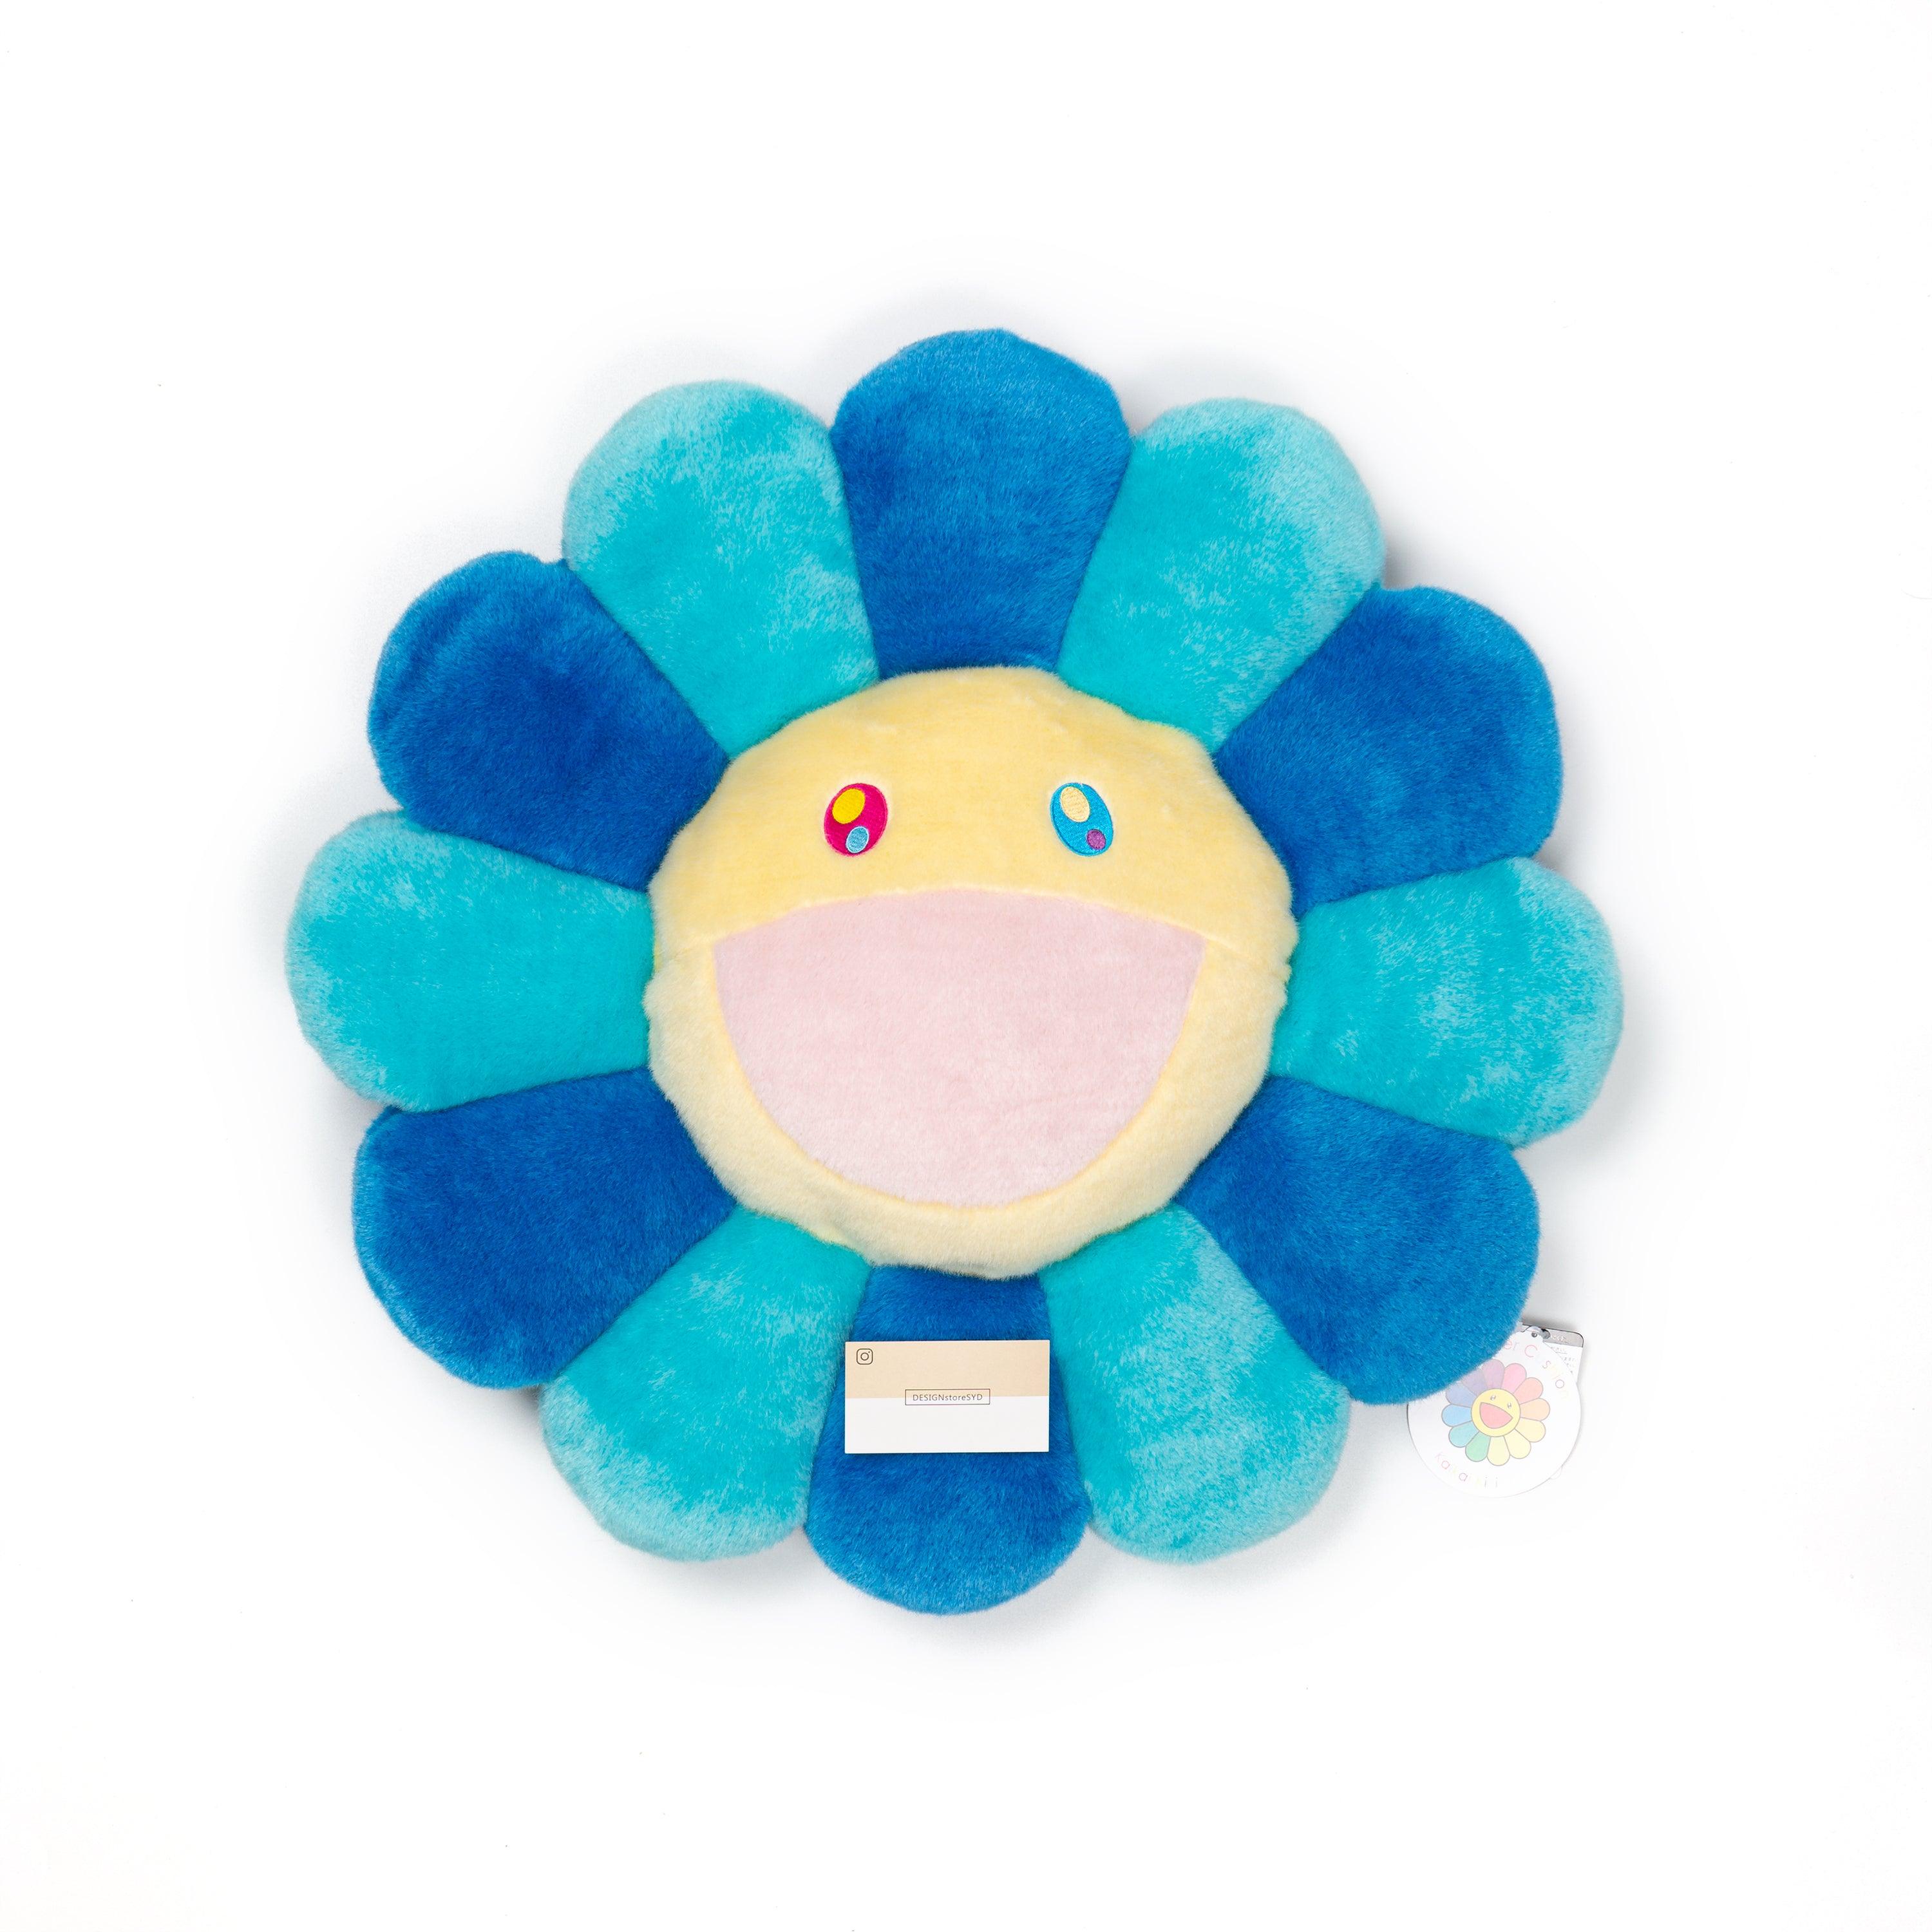 DSSYD:Takashi Murakami flower plush 30cm Valentines day drop - Takashi  Murakami Flower Pillow Blue and Lt Blue